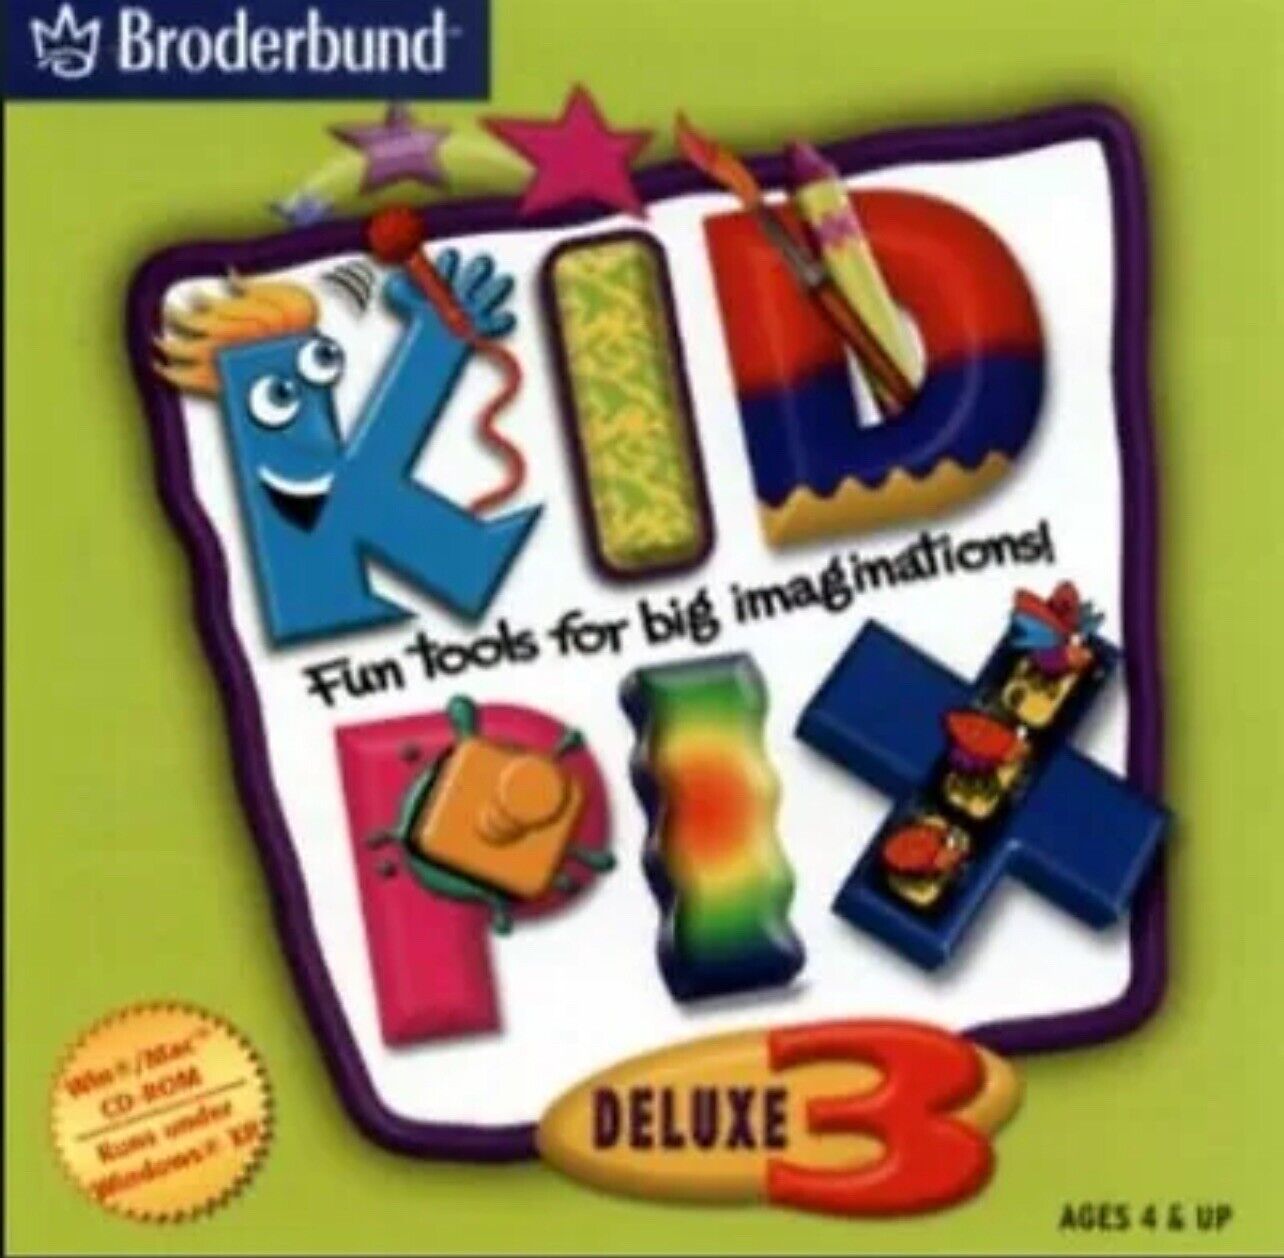 NEW Kid Pix Deluxe 3 Software CD HomeSchool Homeschooling Children Art PC/MAC